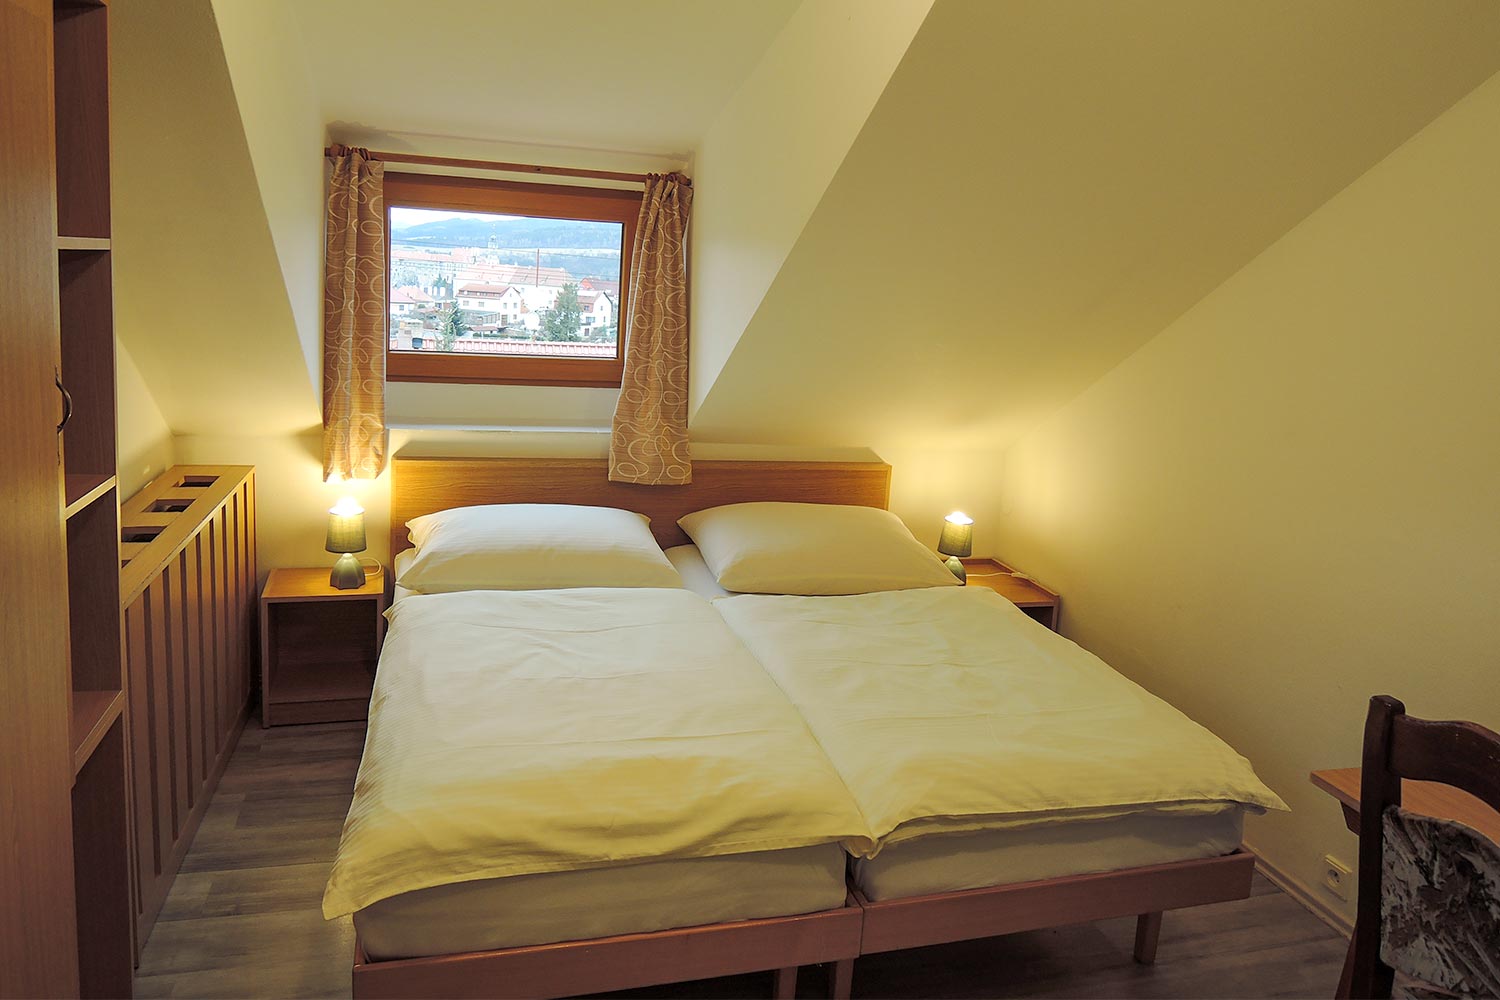 Dvojlůžkový pokoj - pohled na postel a okno